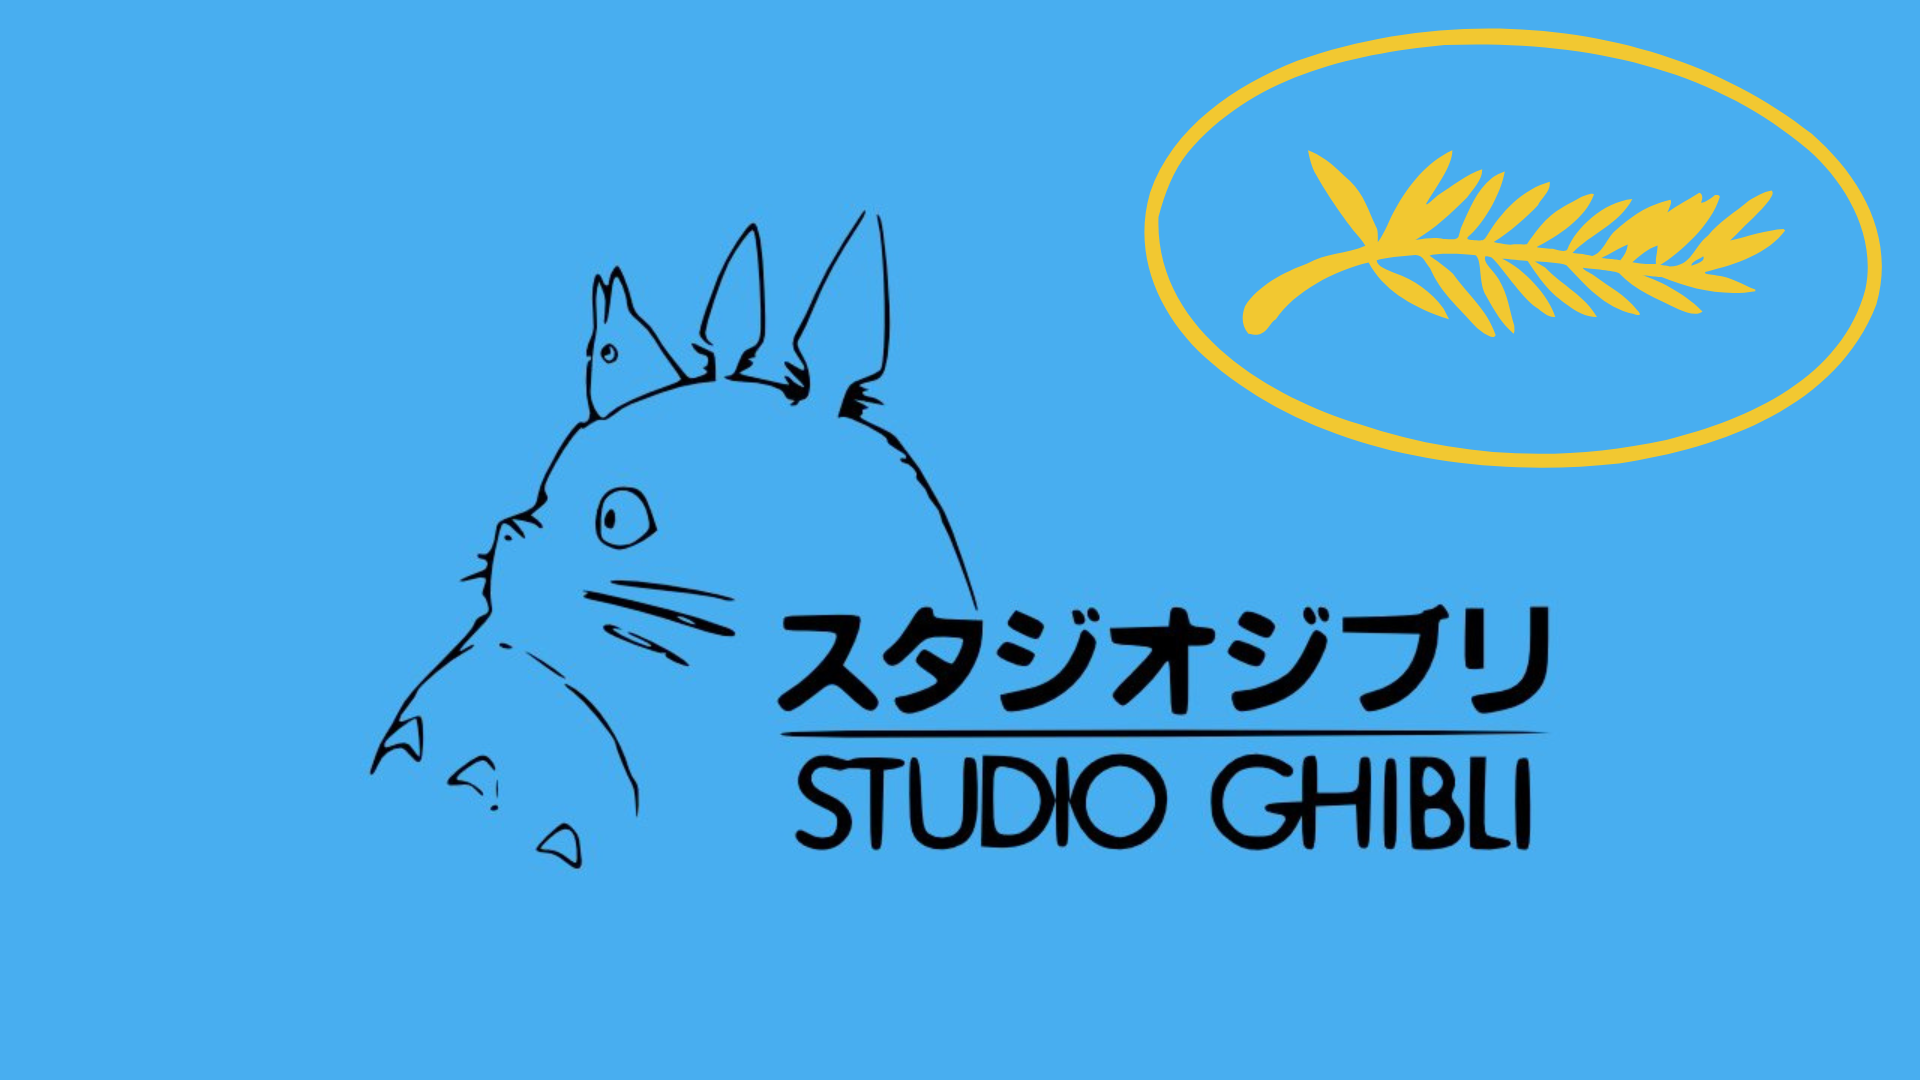 Cannes premia lo Studio Ghibli con la Palma d’oro onoraria: un riconoscimento storico per i maestri dell’animazione